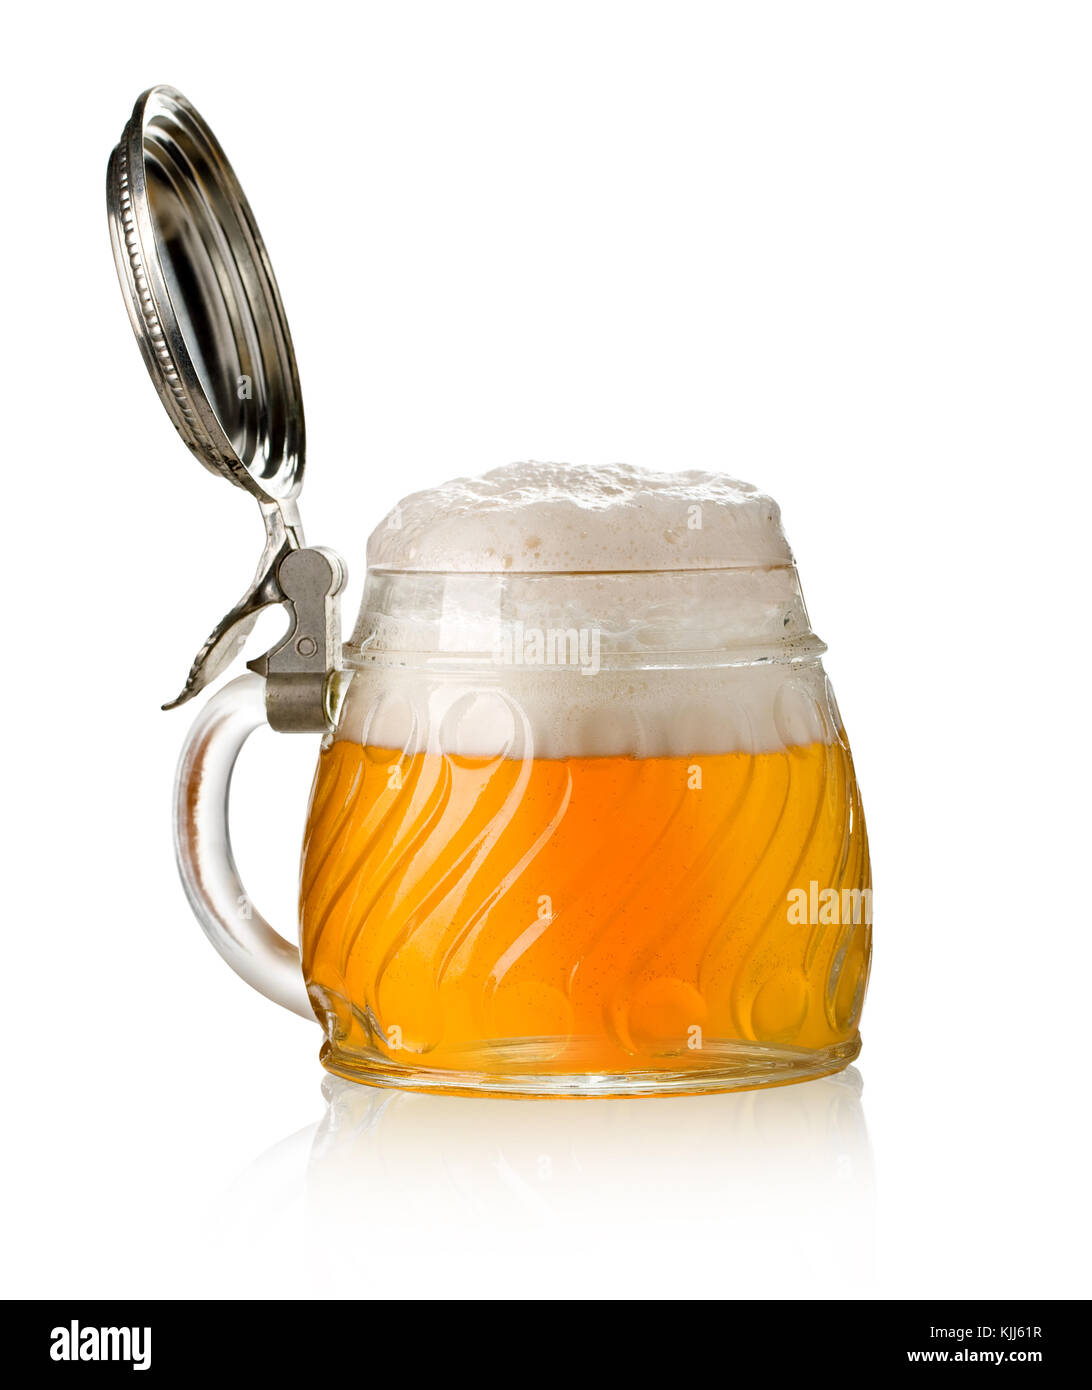 Boccale di birra con aprire il tappo metallico nel retro bianco Foto stock  - Alamy